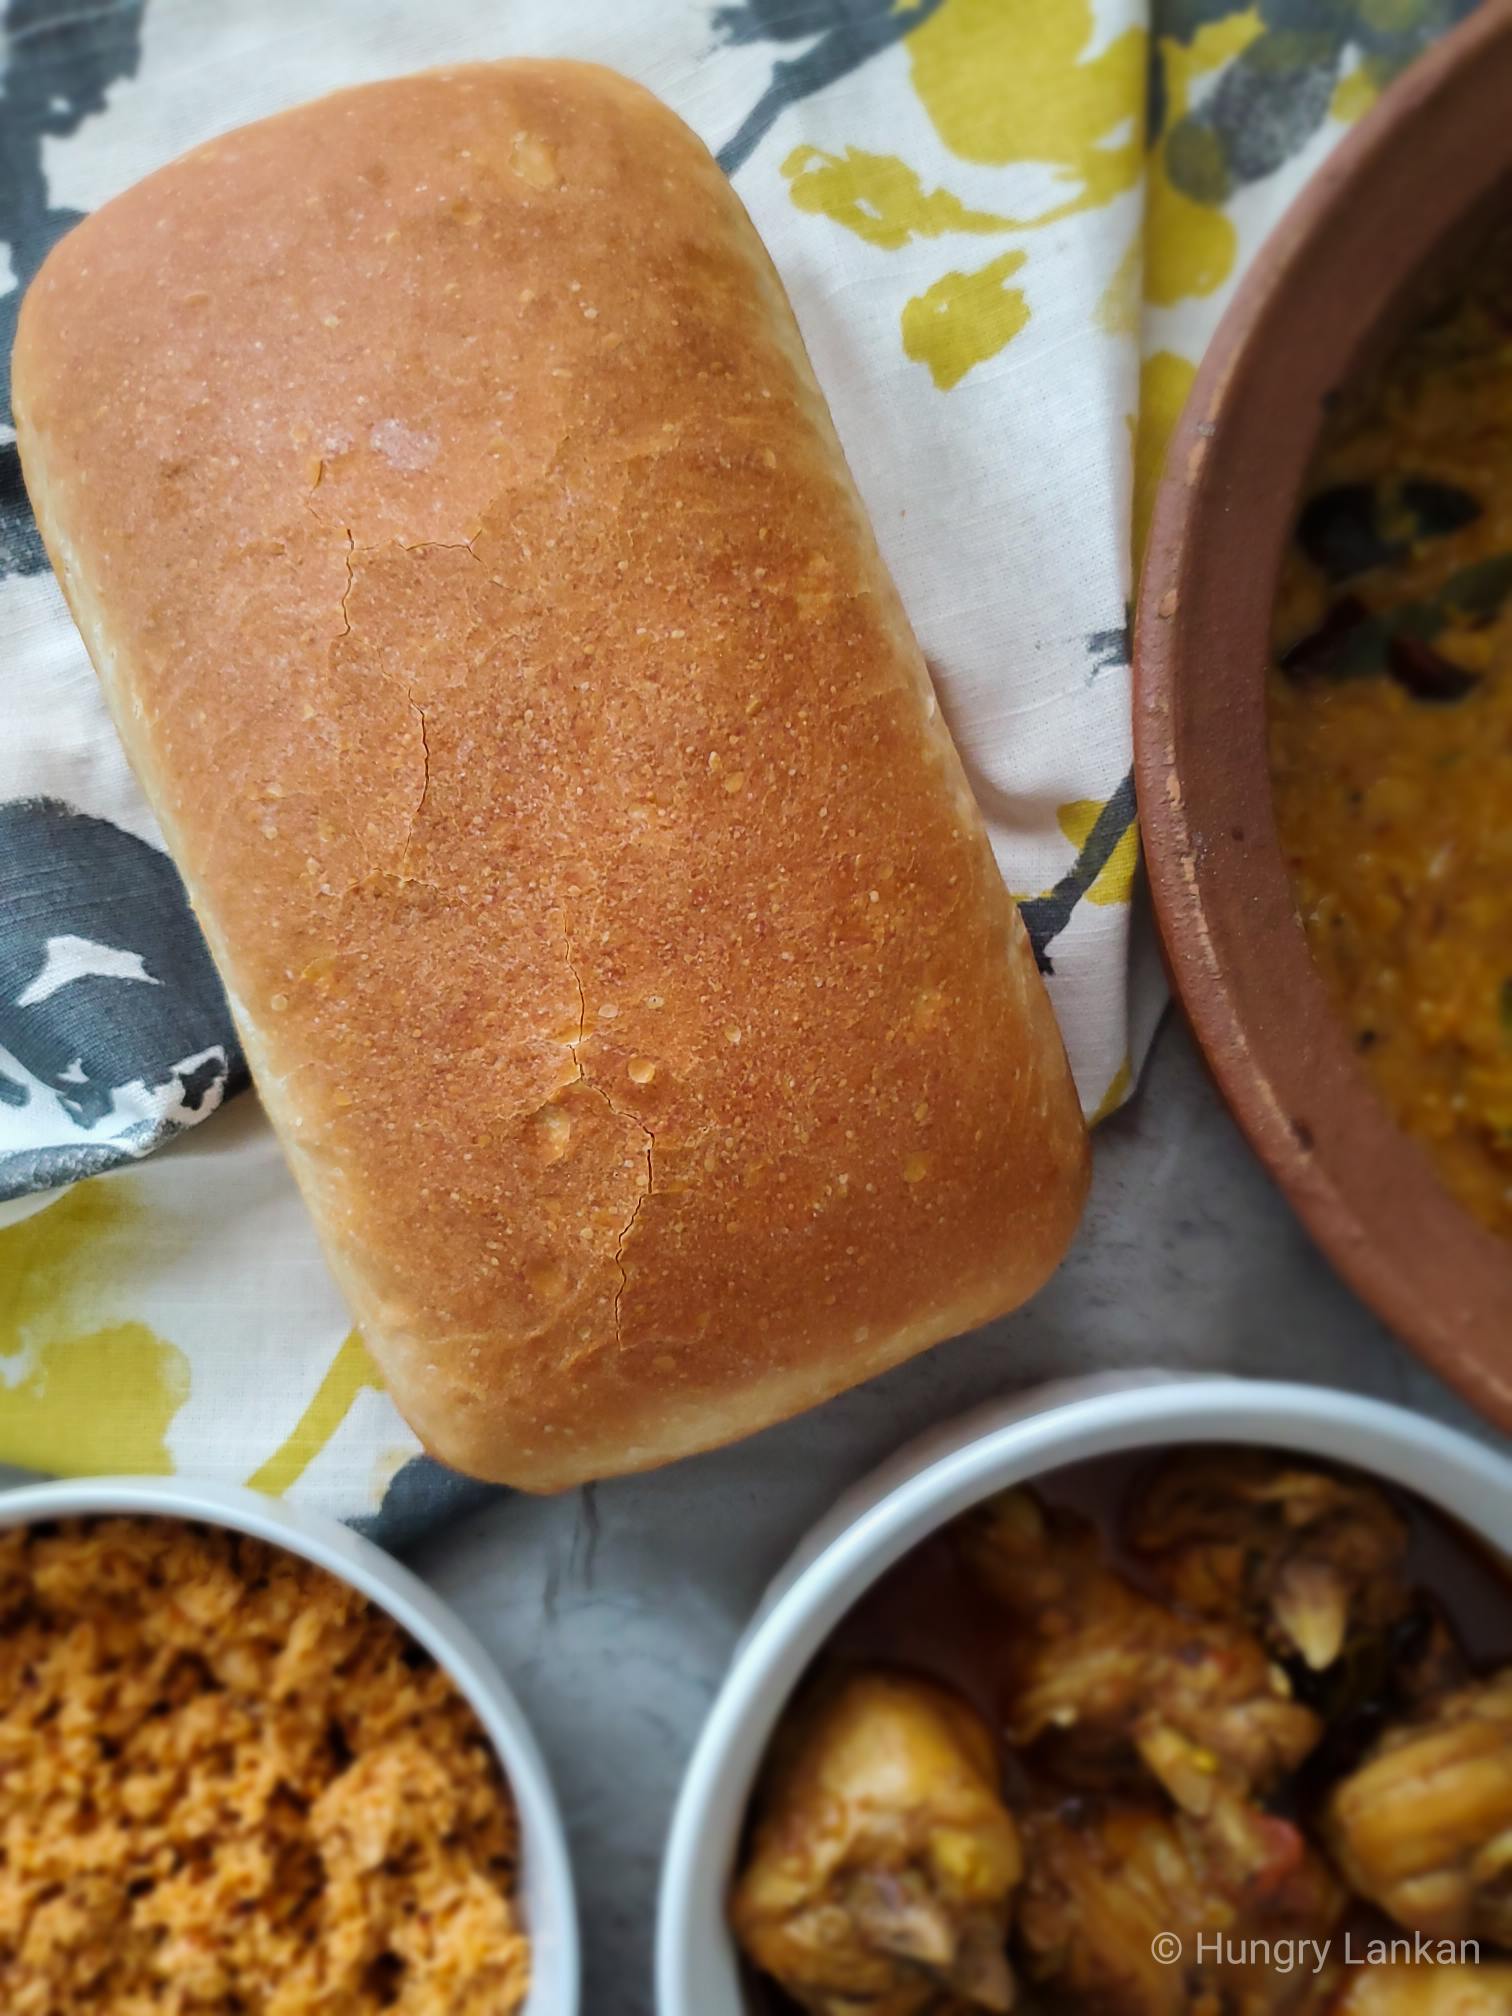 Sourdough discard Bread Recipe - Hungry Lankan